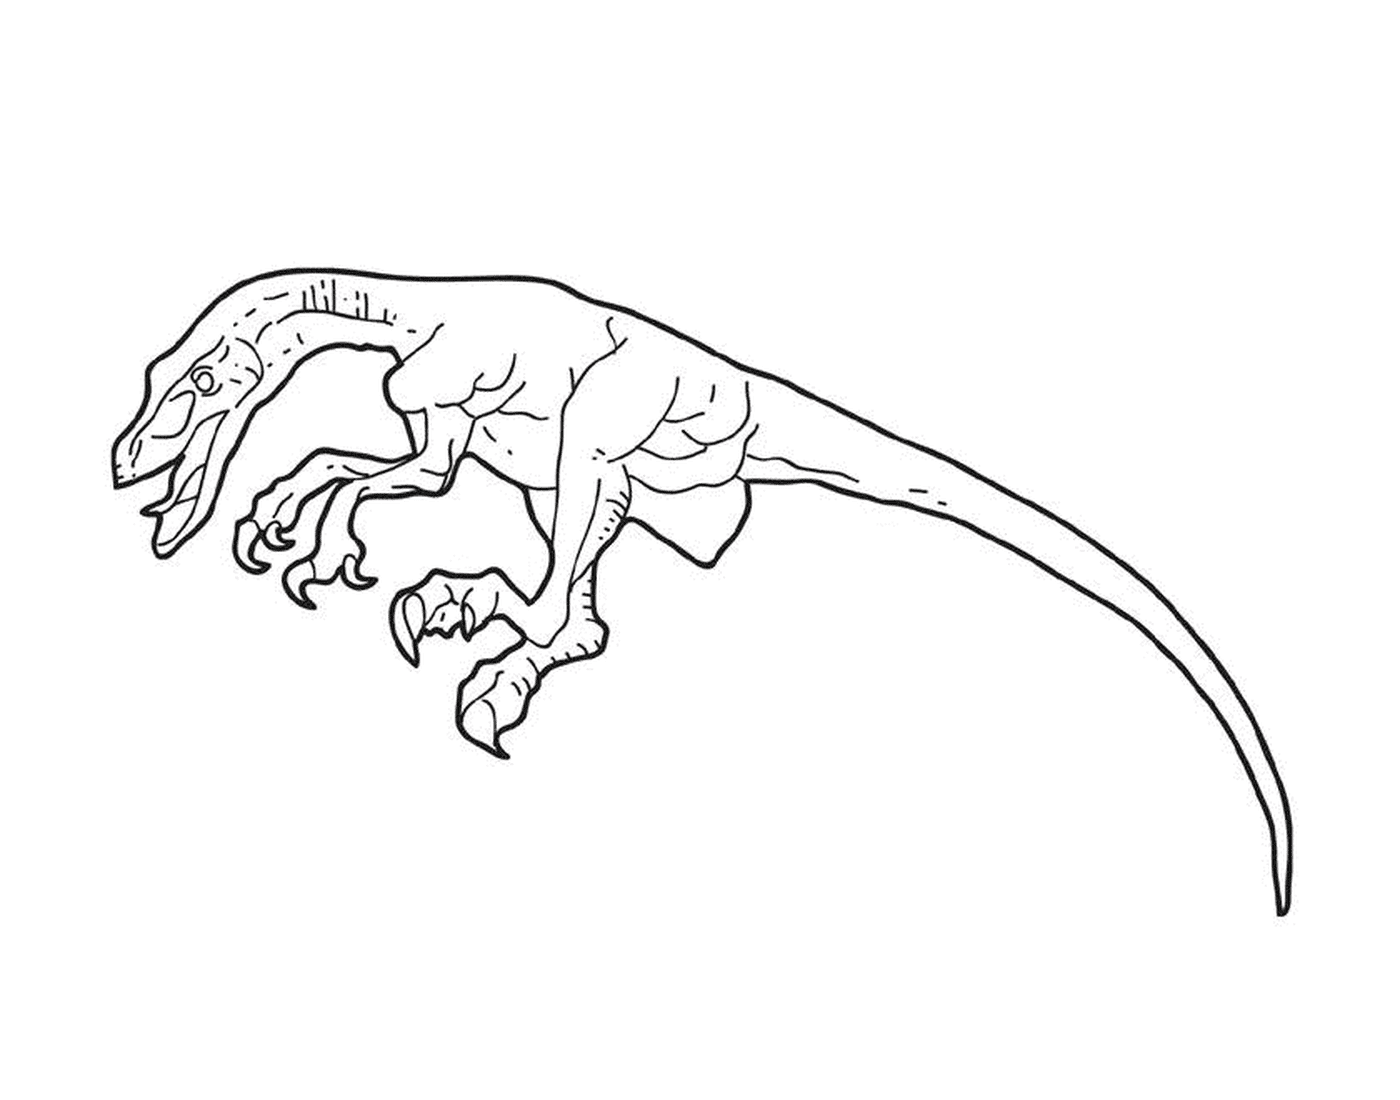  Um dinossauro desenhado em tinta 